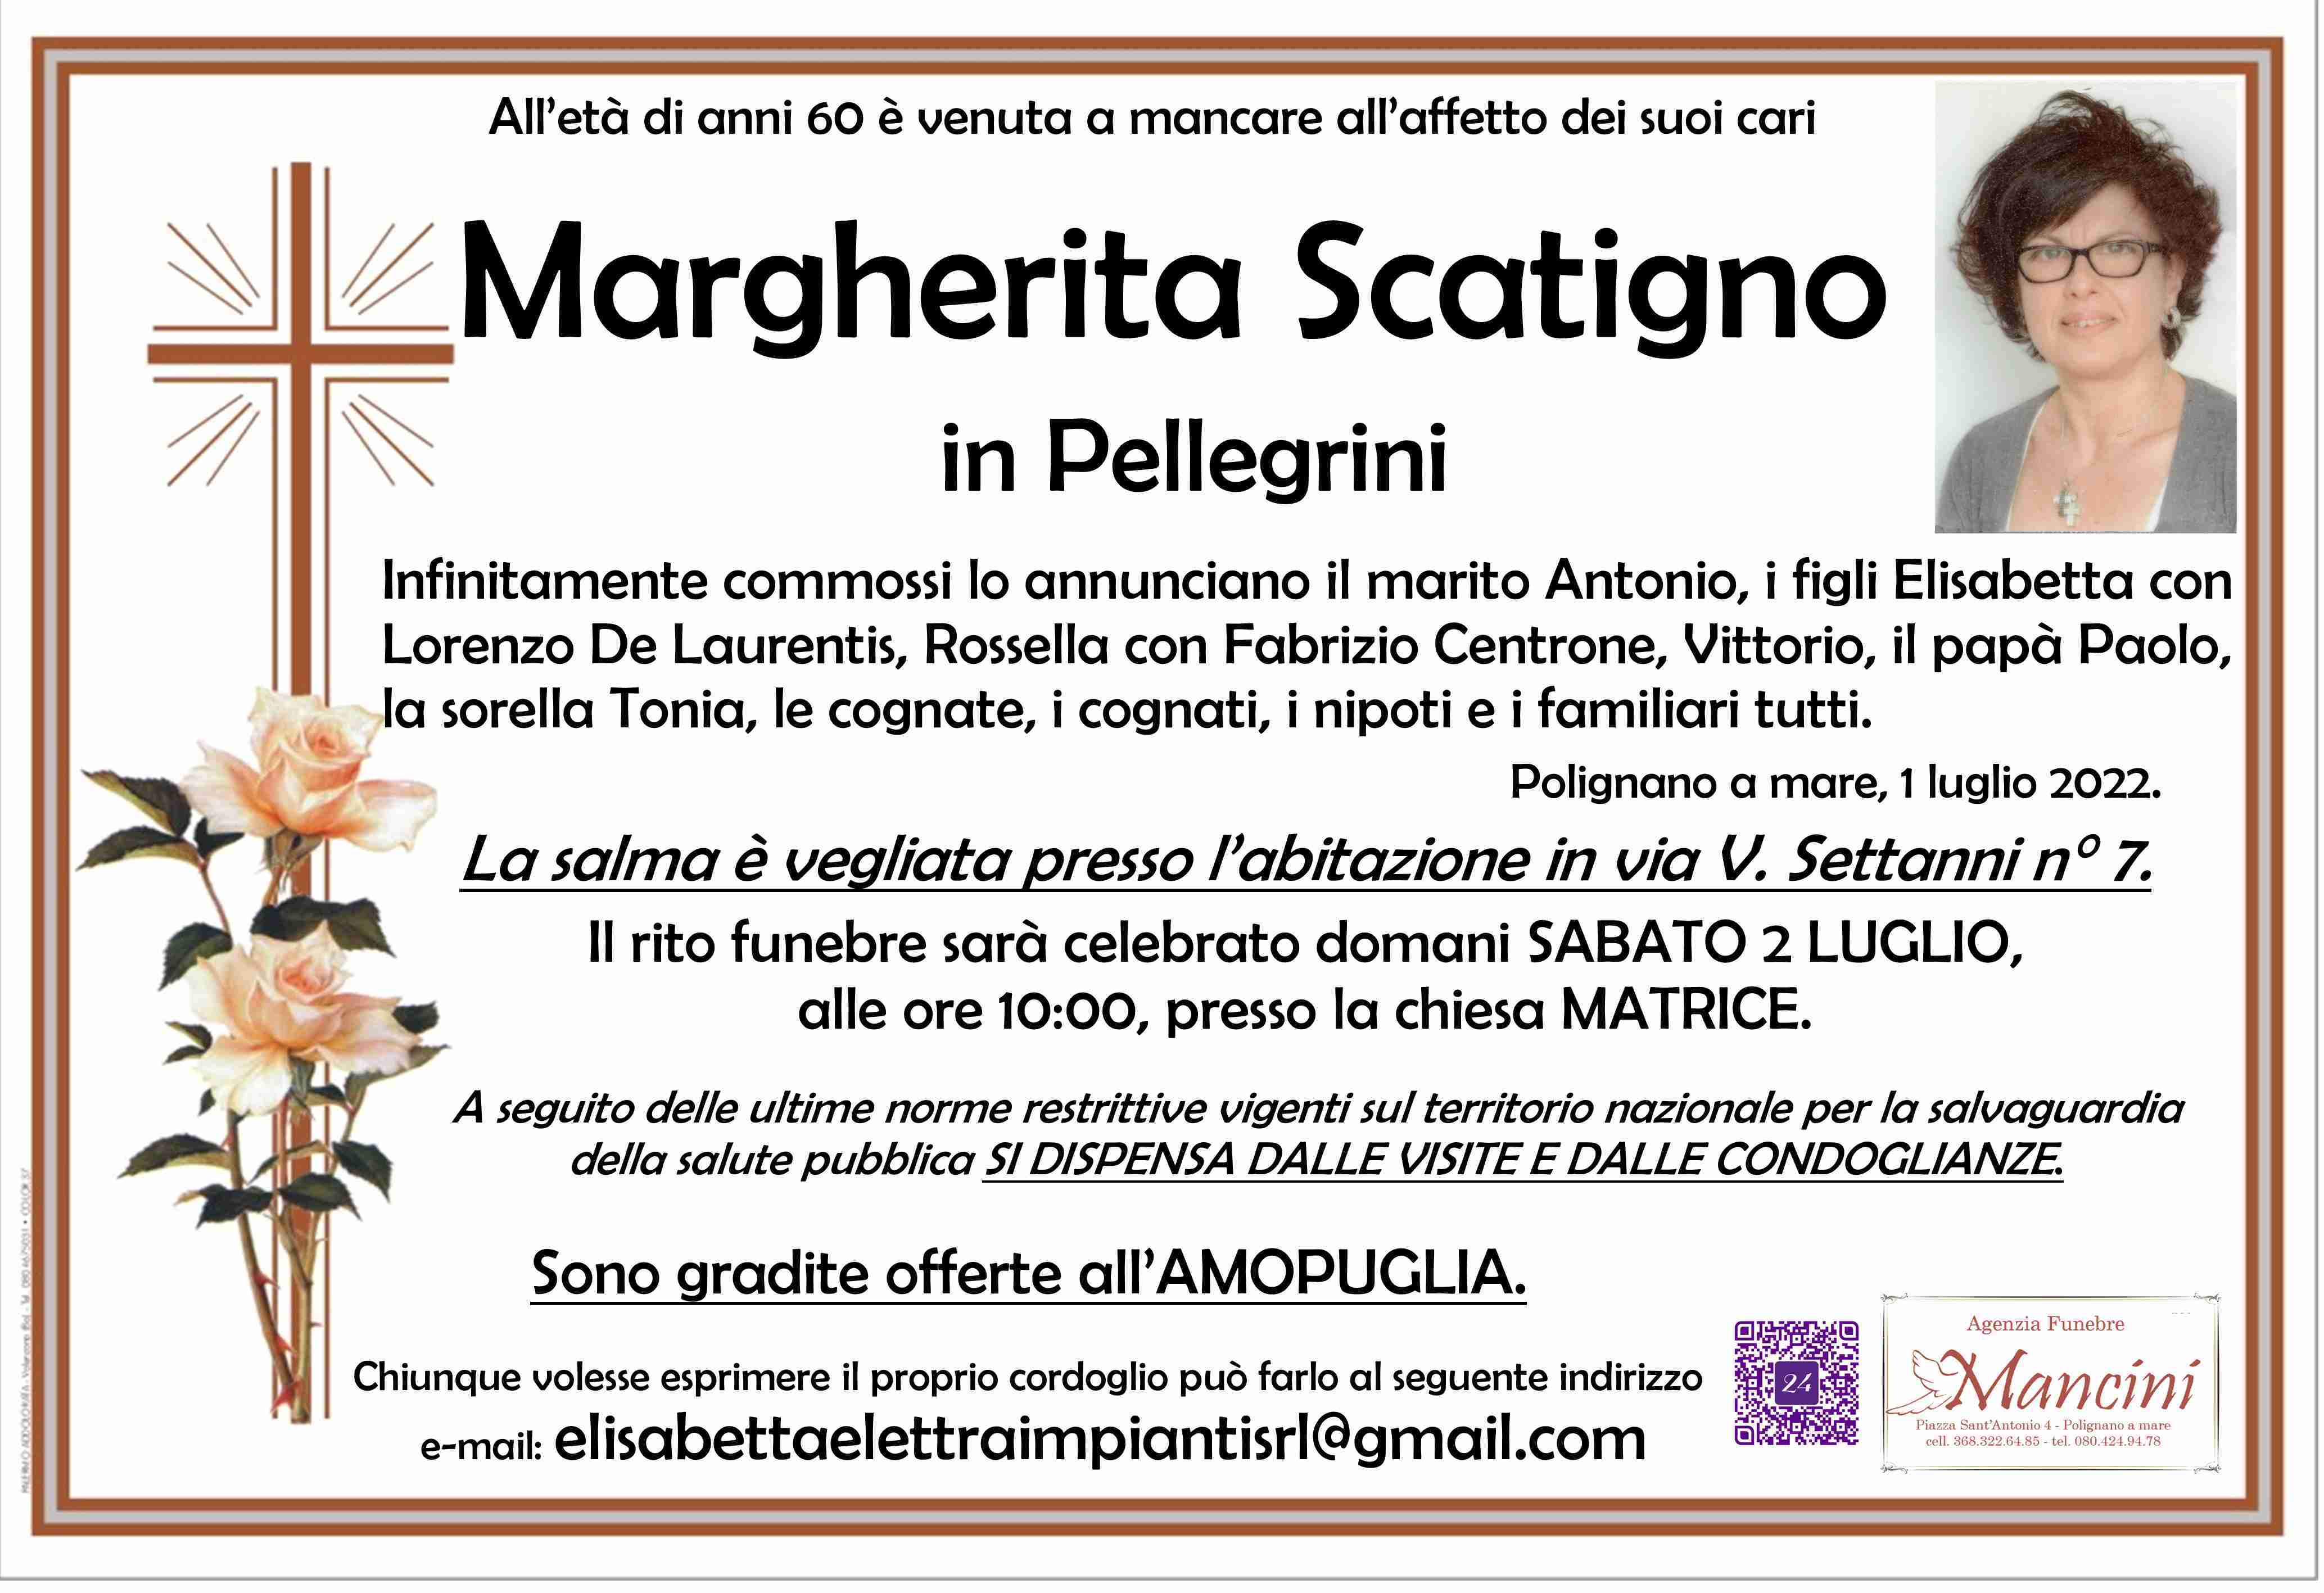 Margherita Scatigno